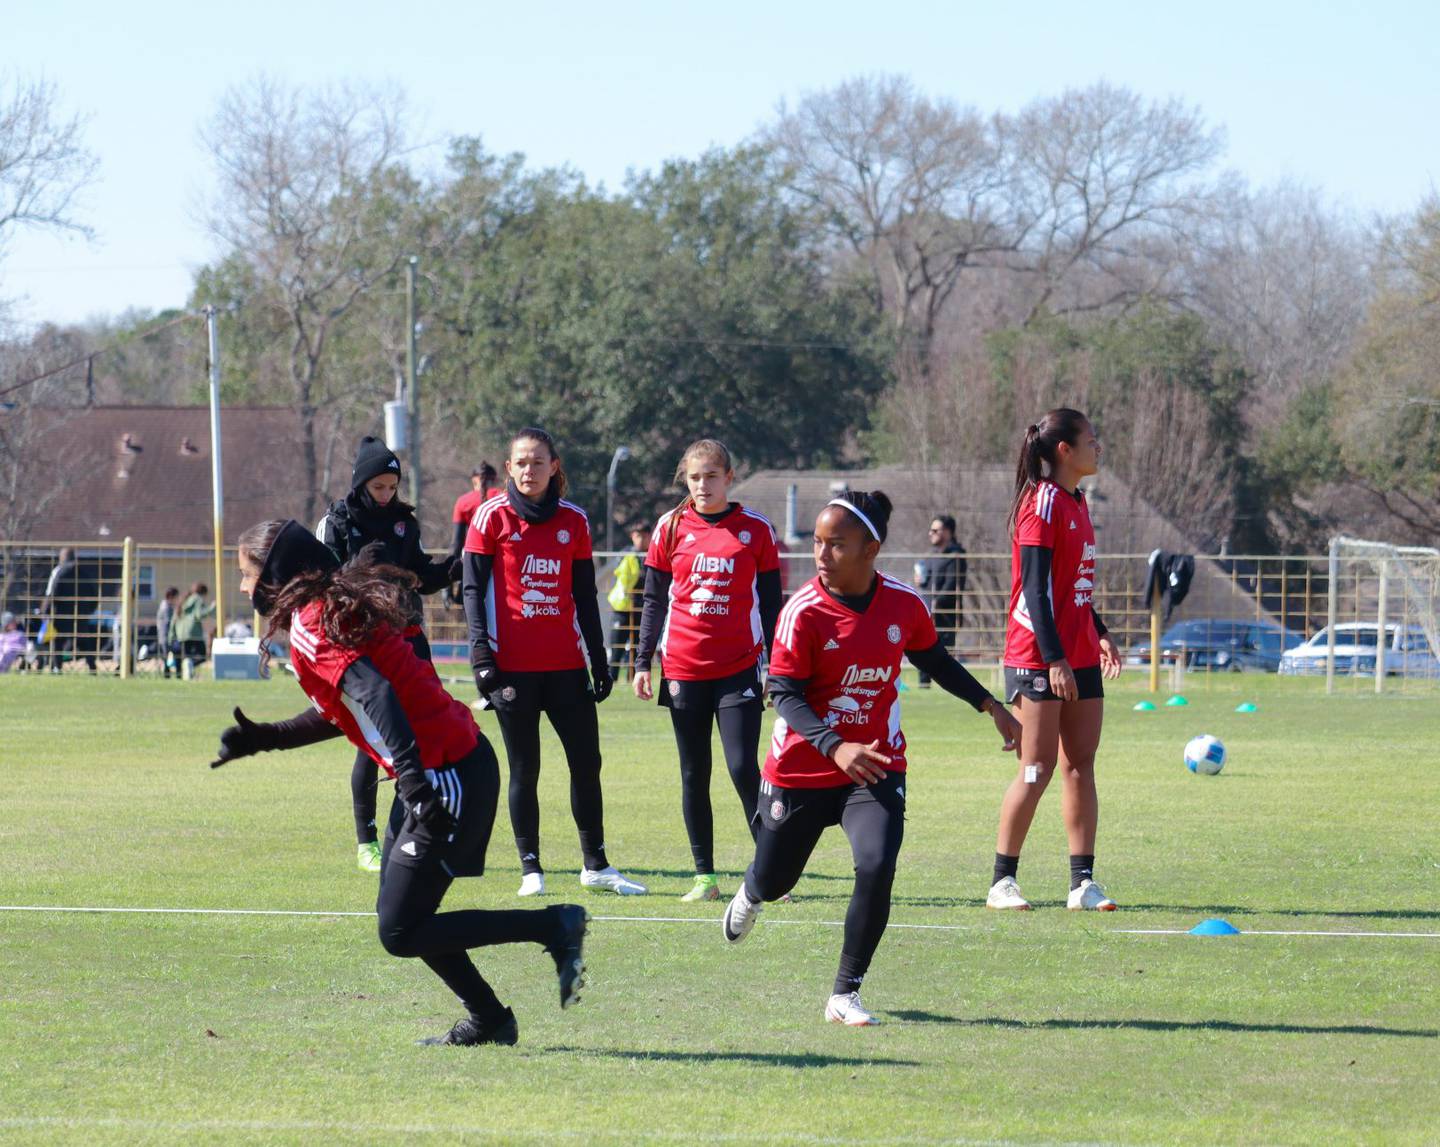 Las bajas temperaturas acompañan a la Selección Femenina de Costa Rica en Houston. Ahí será donde las ticas jugarán la fase de grupos en la Copa Oro.